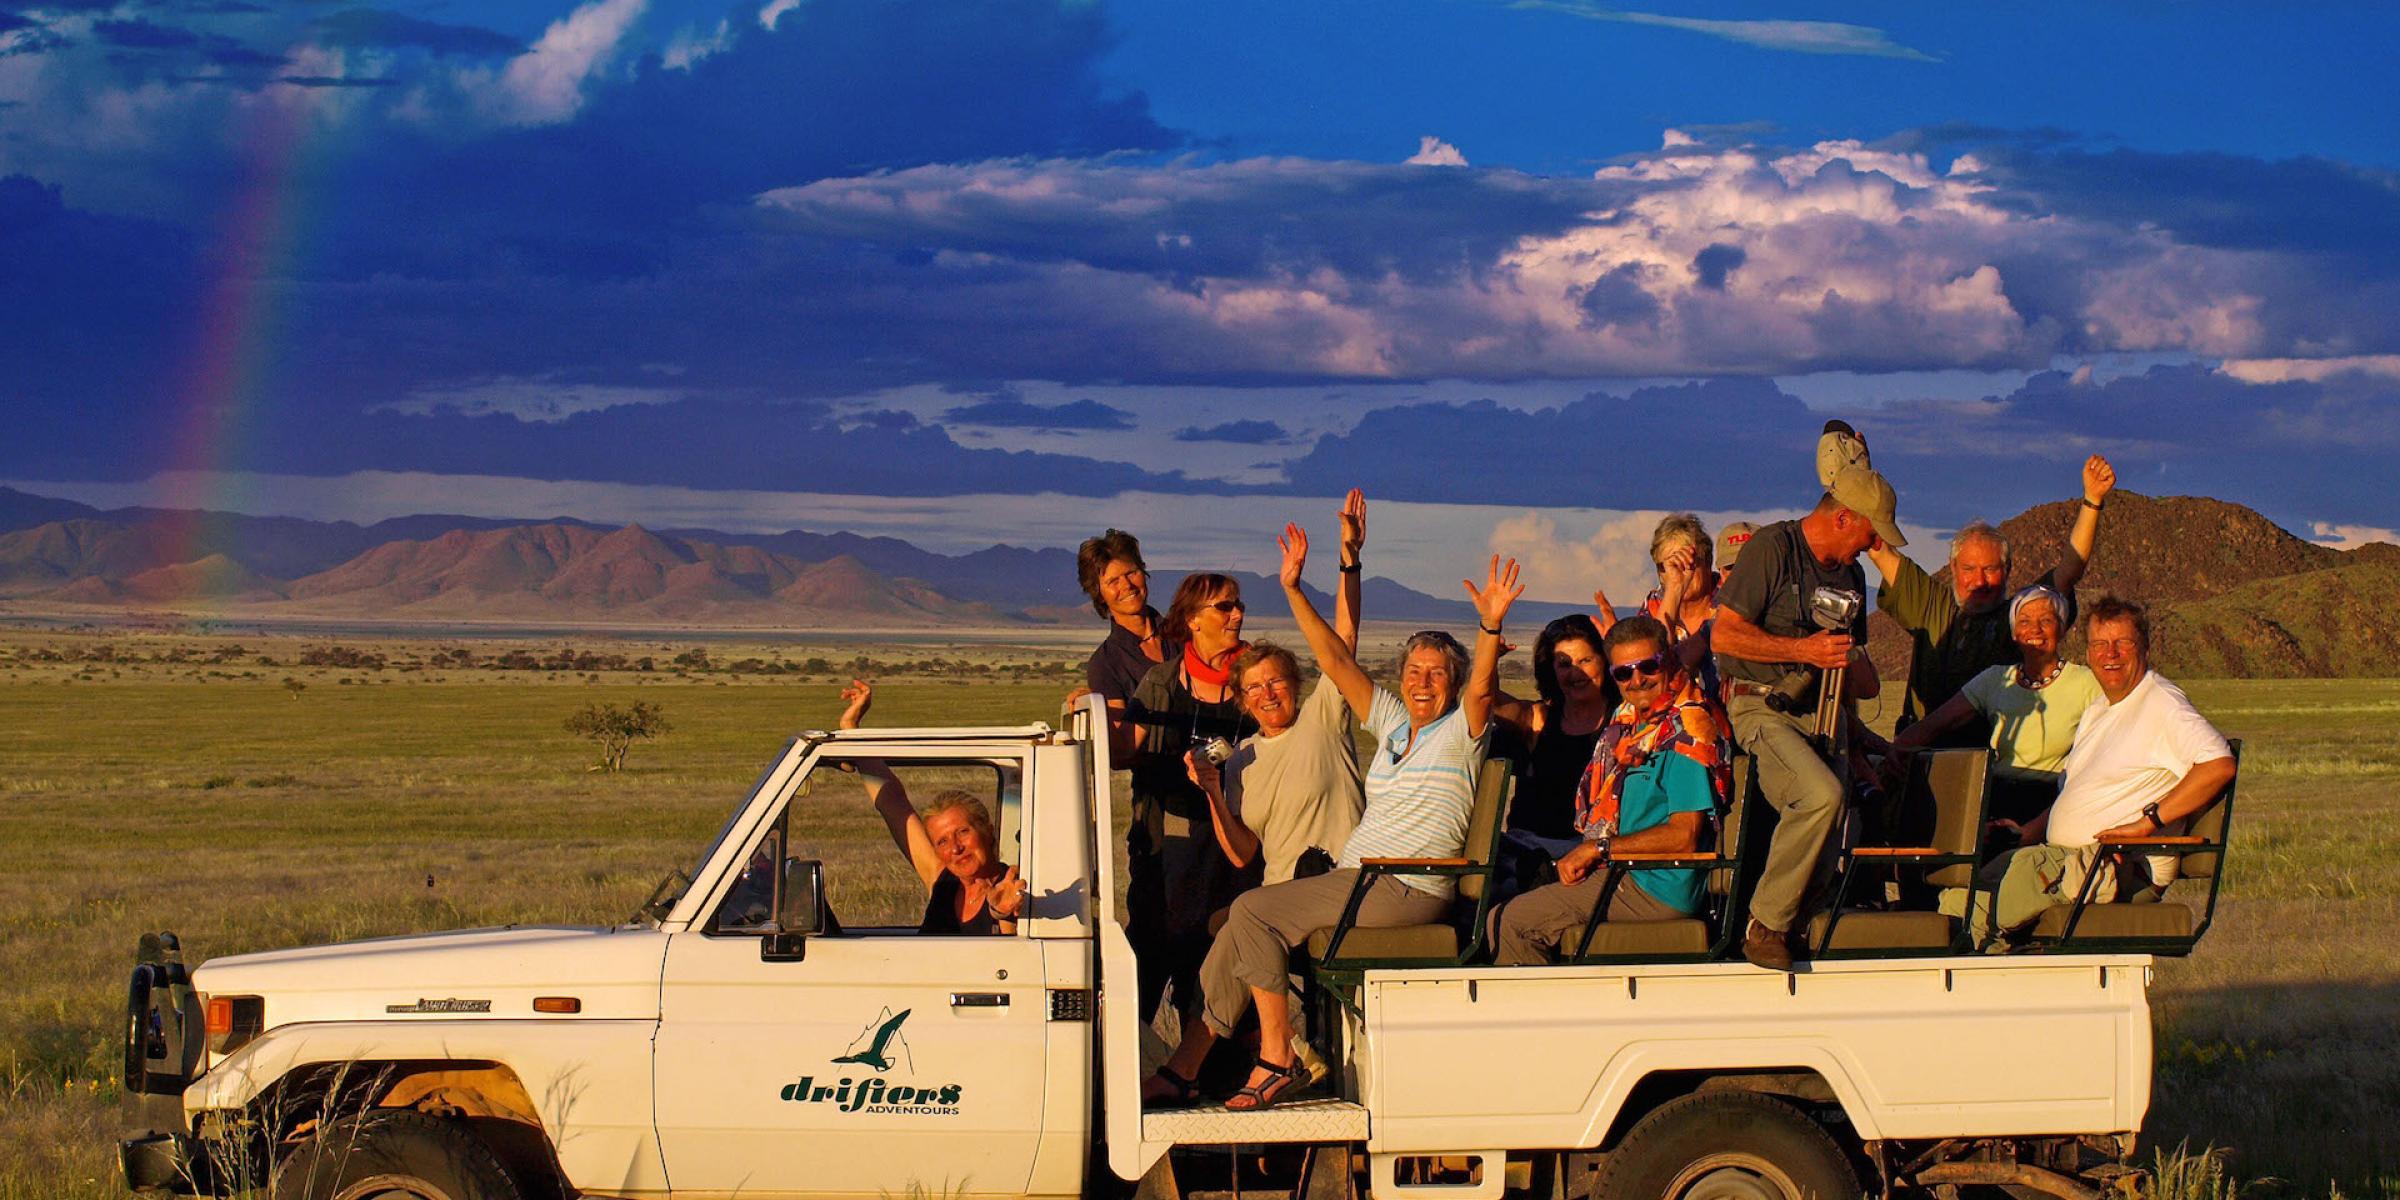 Gruppenreisen: Afrika auf einer Gruppenreise entdecken. Gemeinsames Gruppenerelebnis auf einer Safari ins Namibrand